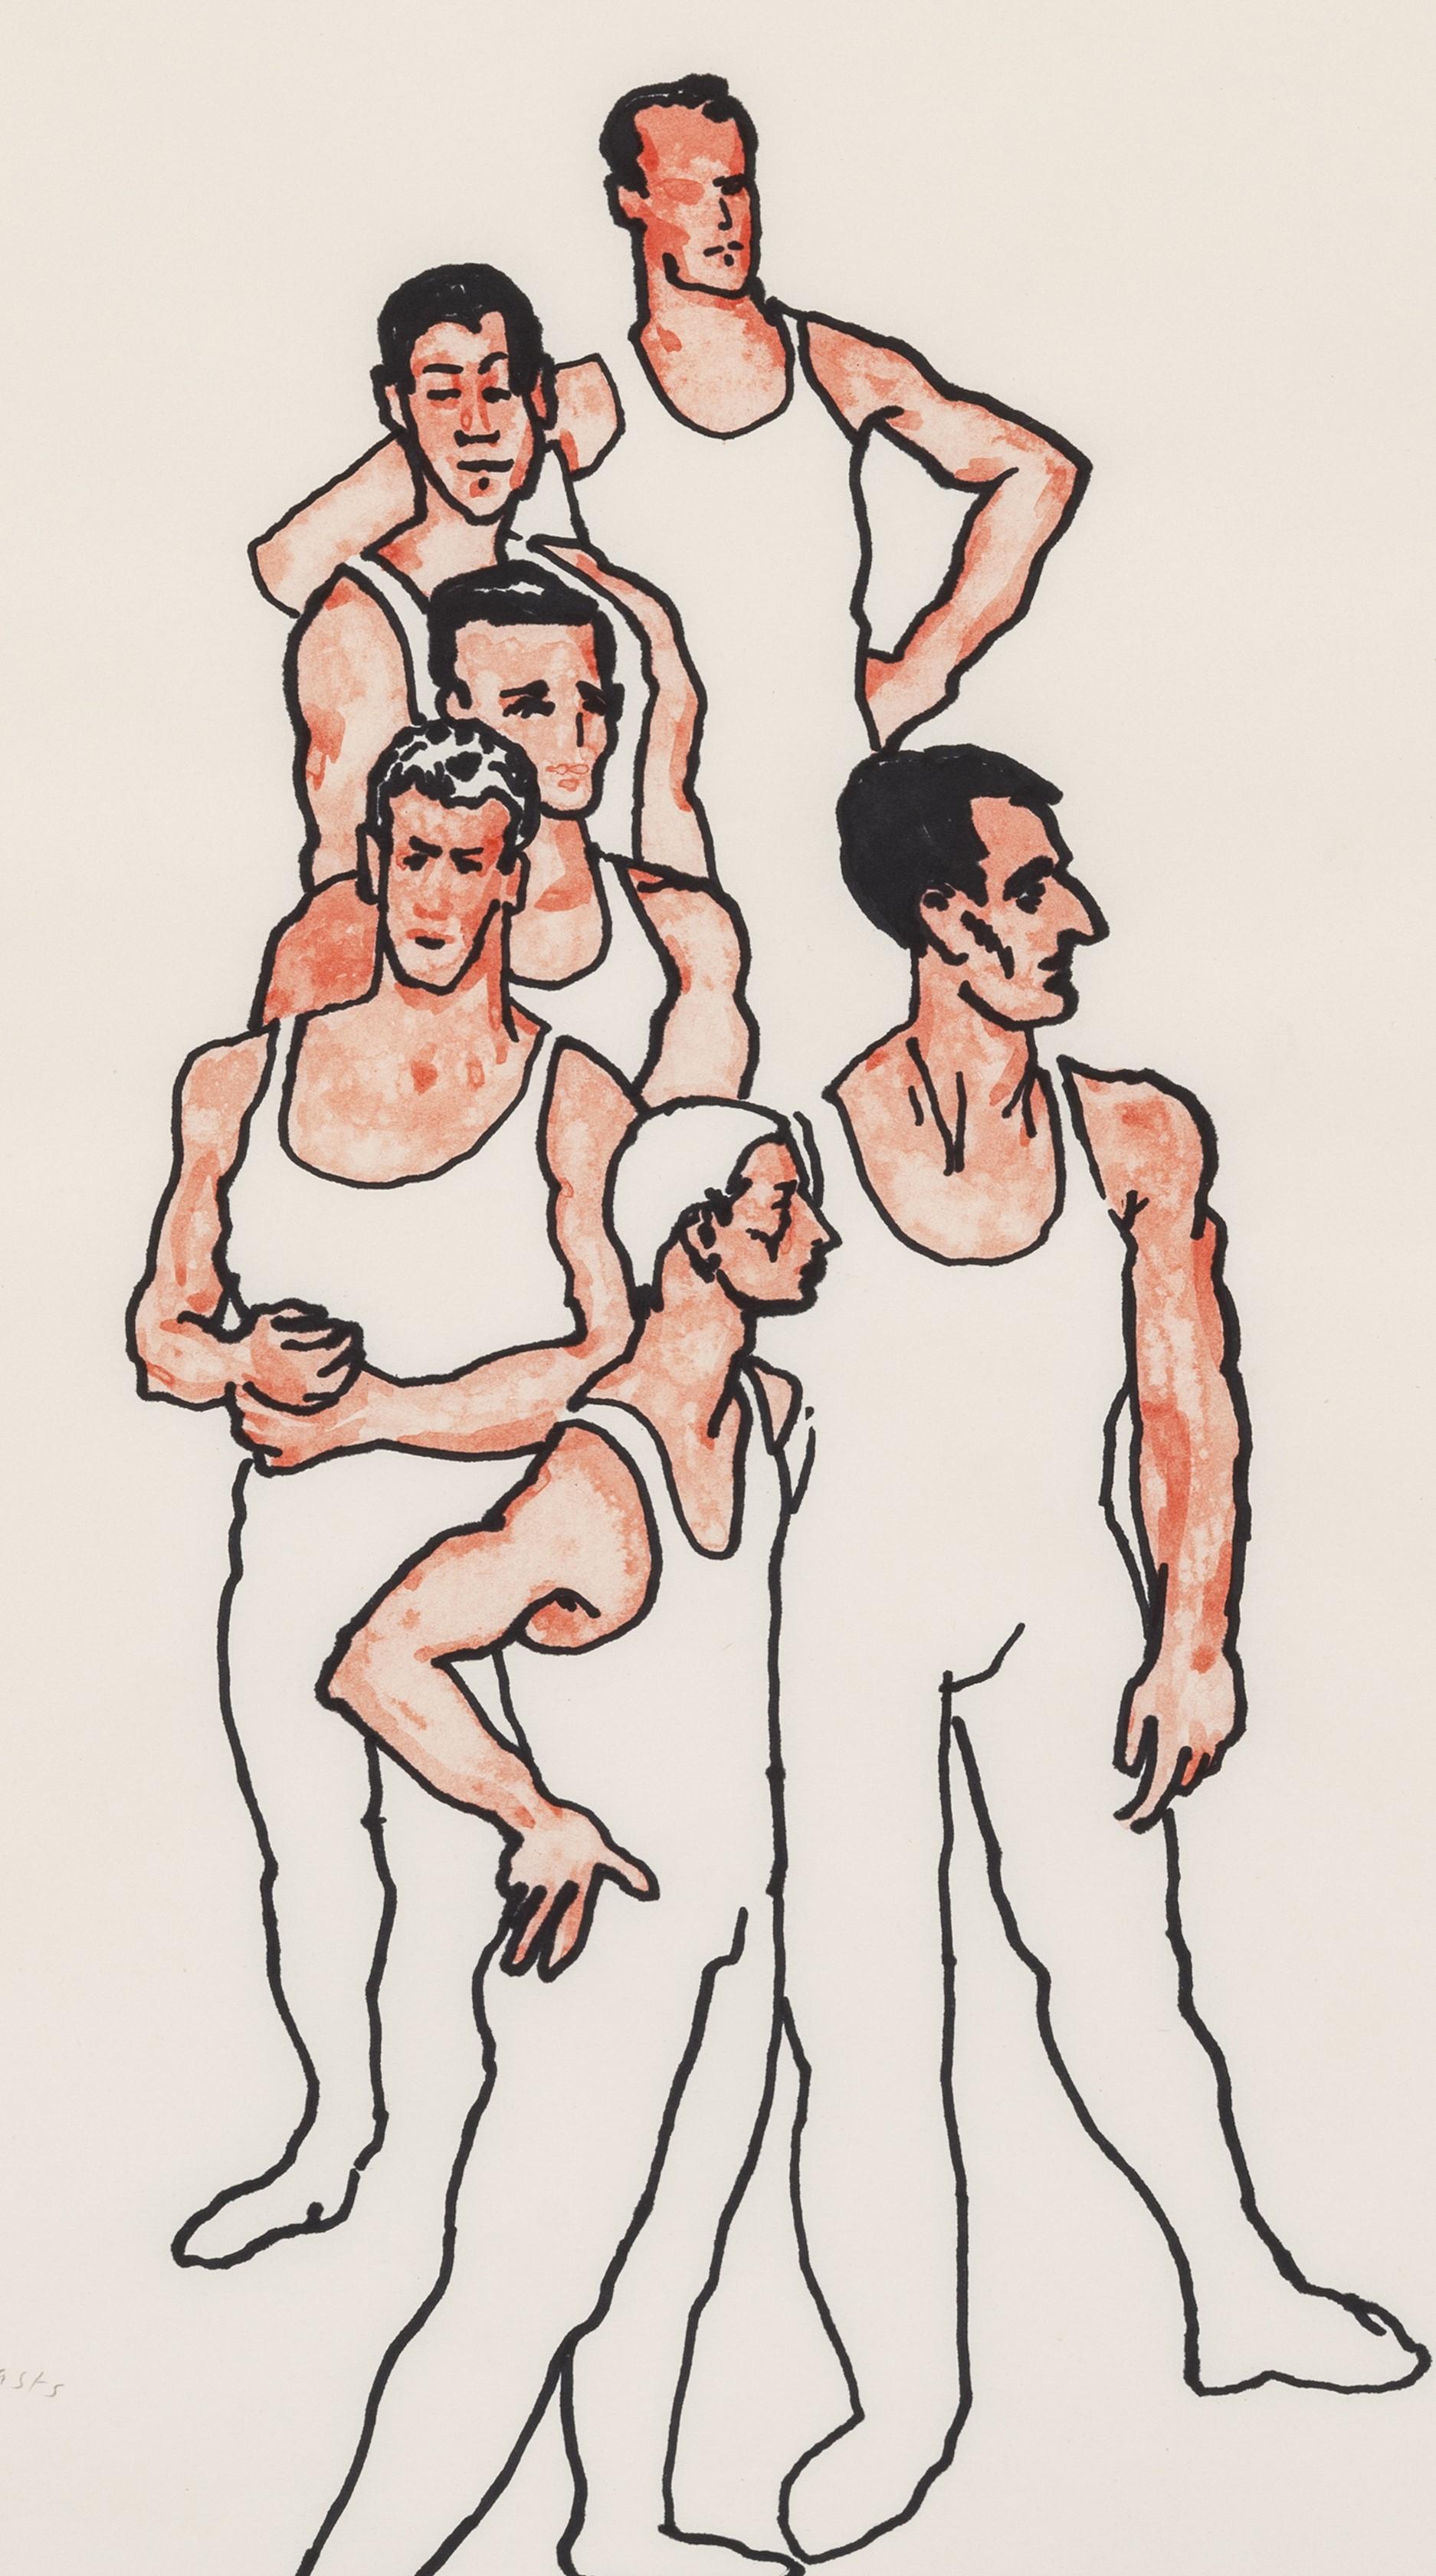 Sechs sowjetische Gymnasten (Nachkriegszeit), Art, von Patrick Procktor